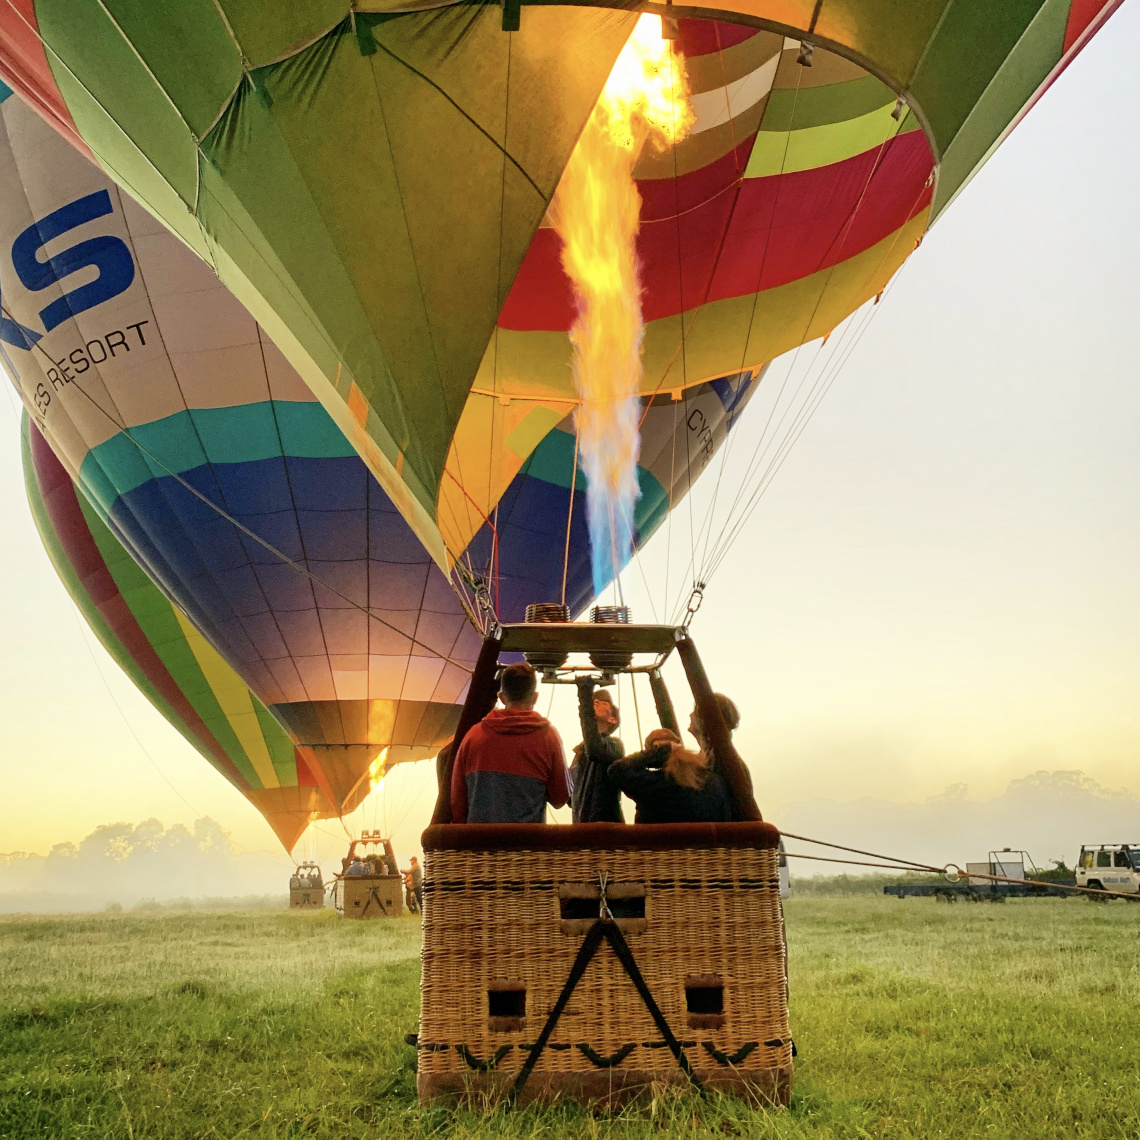  Hot air balloon launch